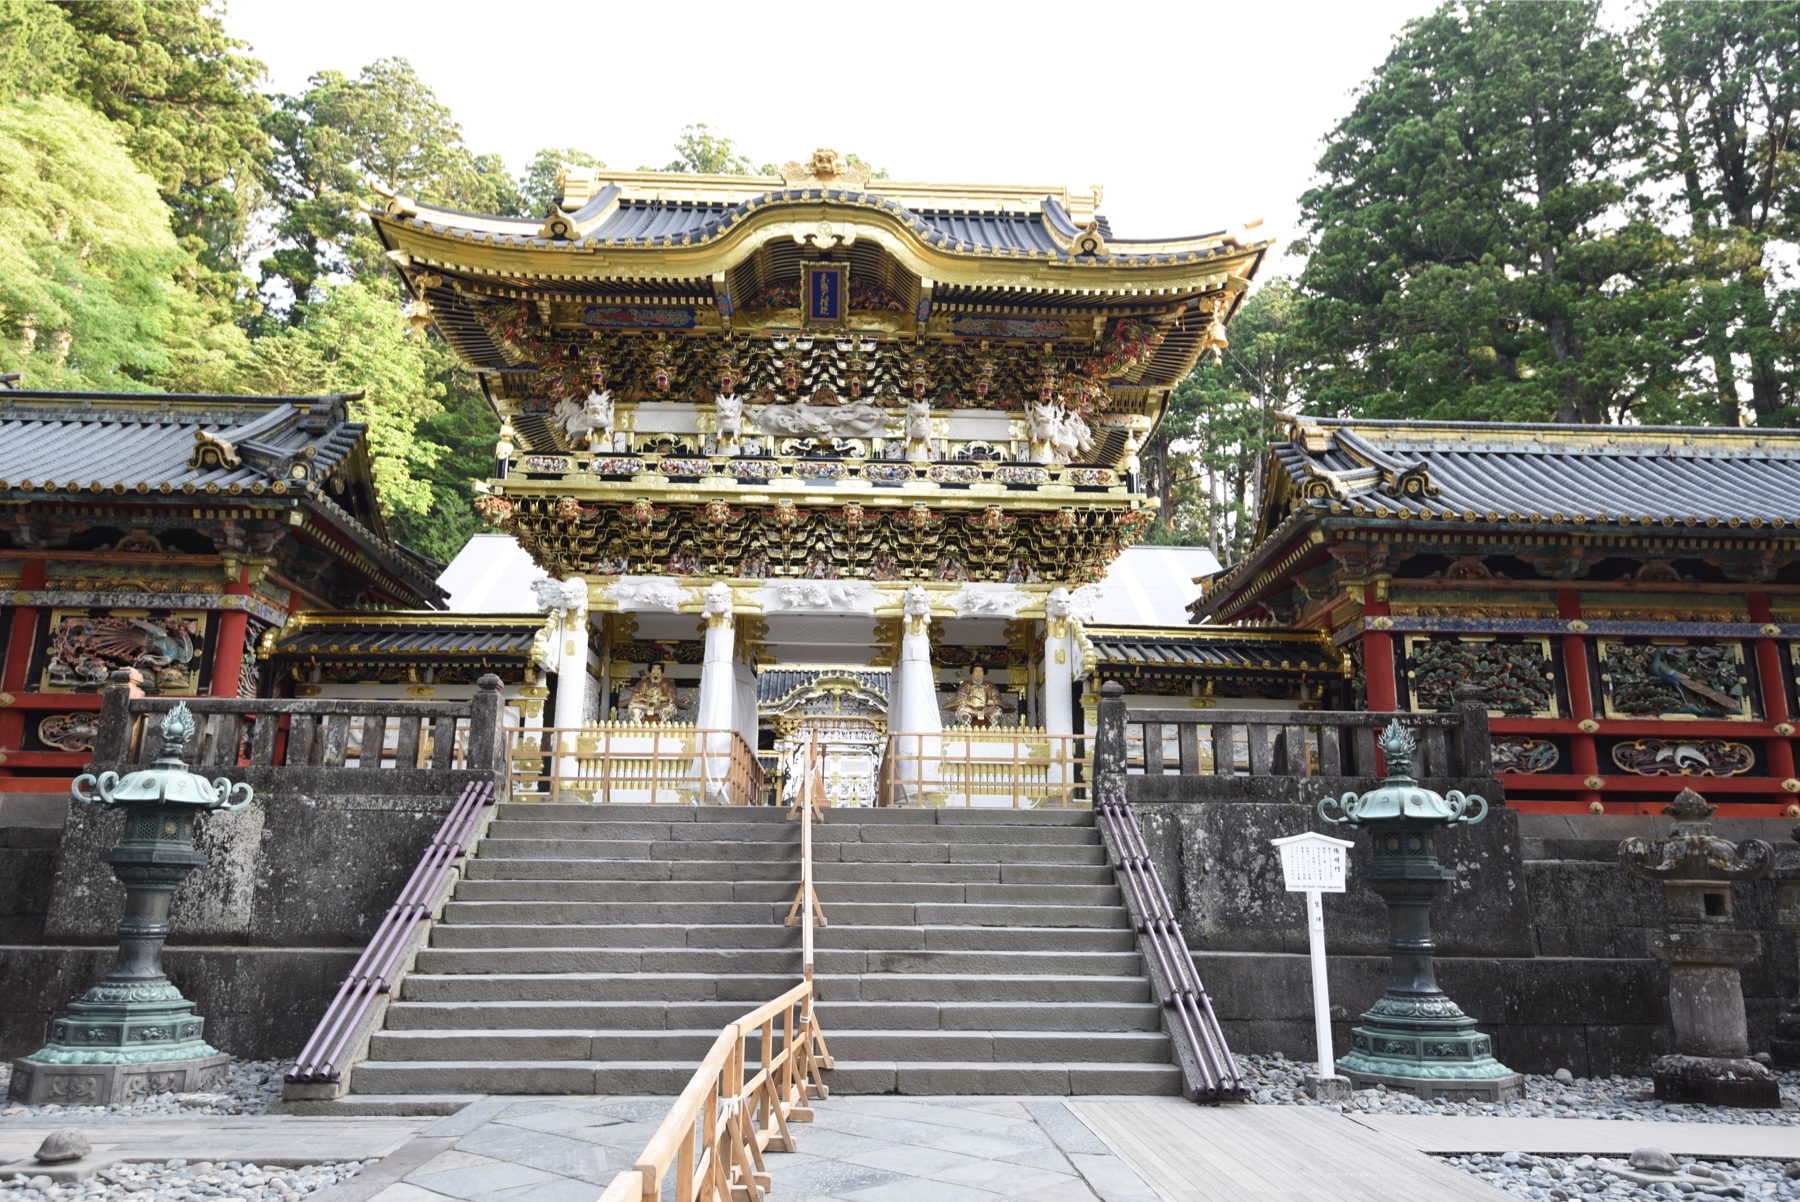 平成29年3月に修復が完成した日光東照宮・国宝「陽明門」にも日本産光琳漆が使用されています。